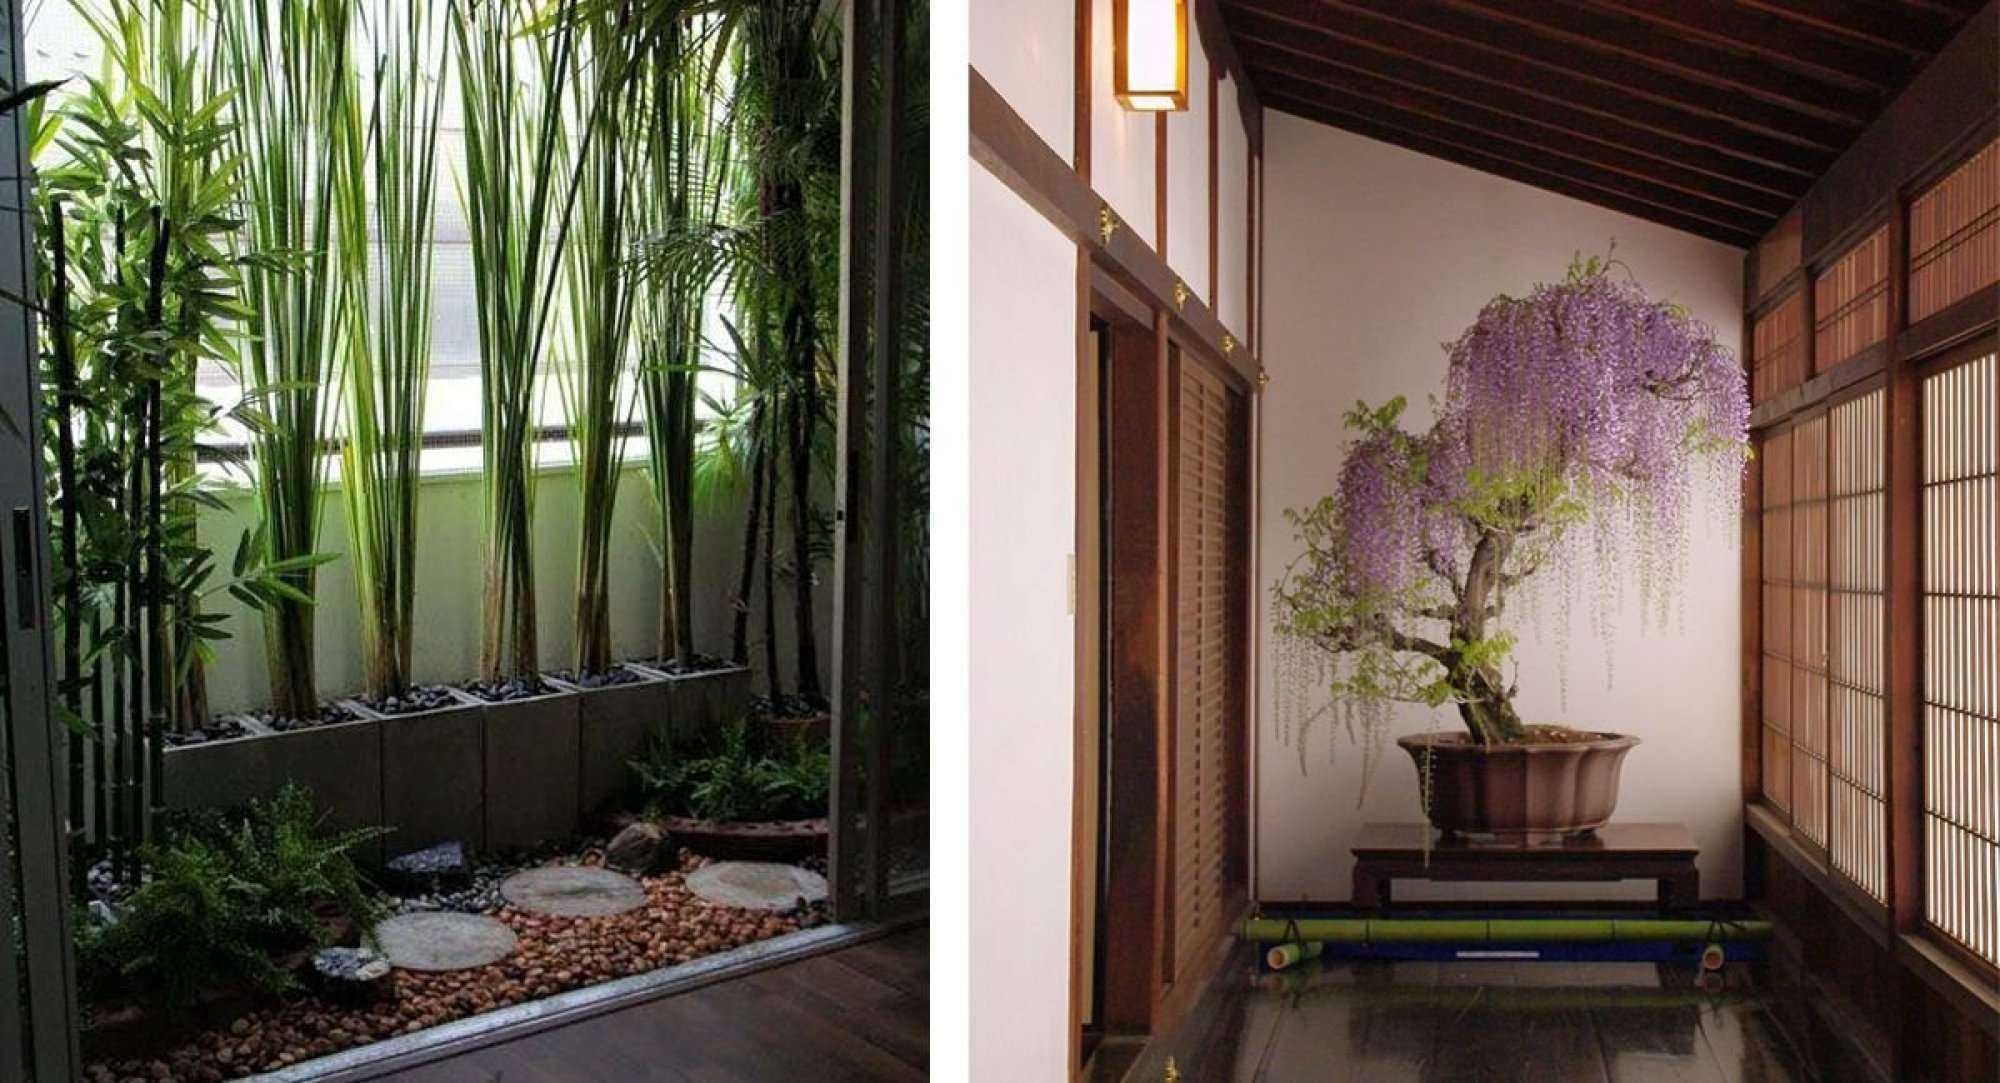 Какие цветы можно держать в ванной комнате без окна: живые цветы, бамбук, орхидея